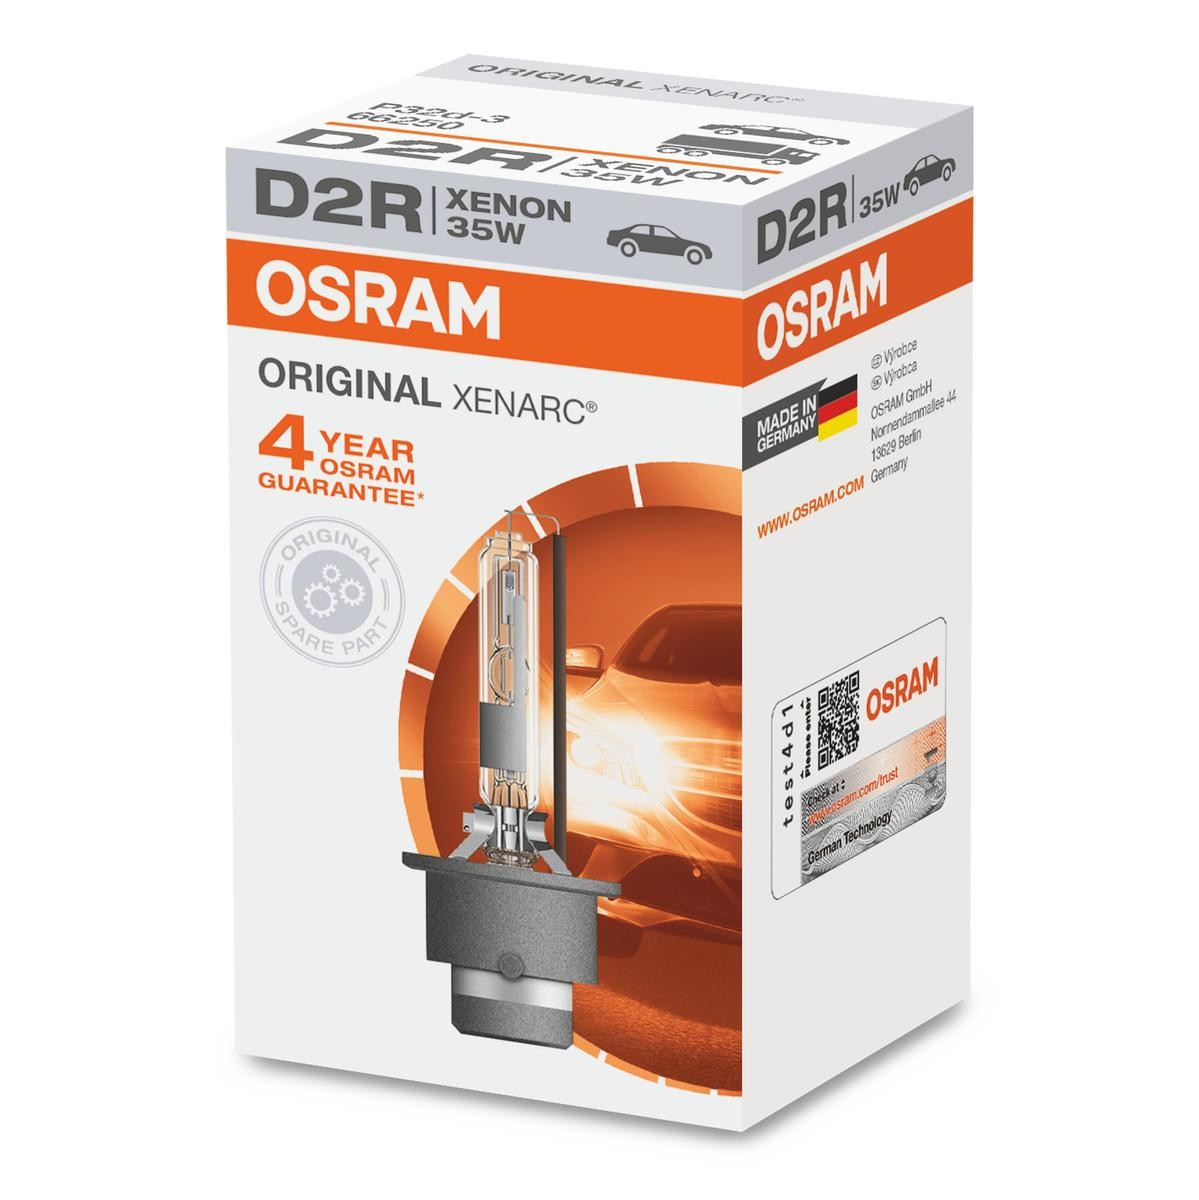 D2R OSRAM XENARC ORIGINAL D2R (gasontladingslamp) 85V 35W P32d-3 4500K Xenon Gloeilamp, verstraler 66250